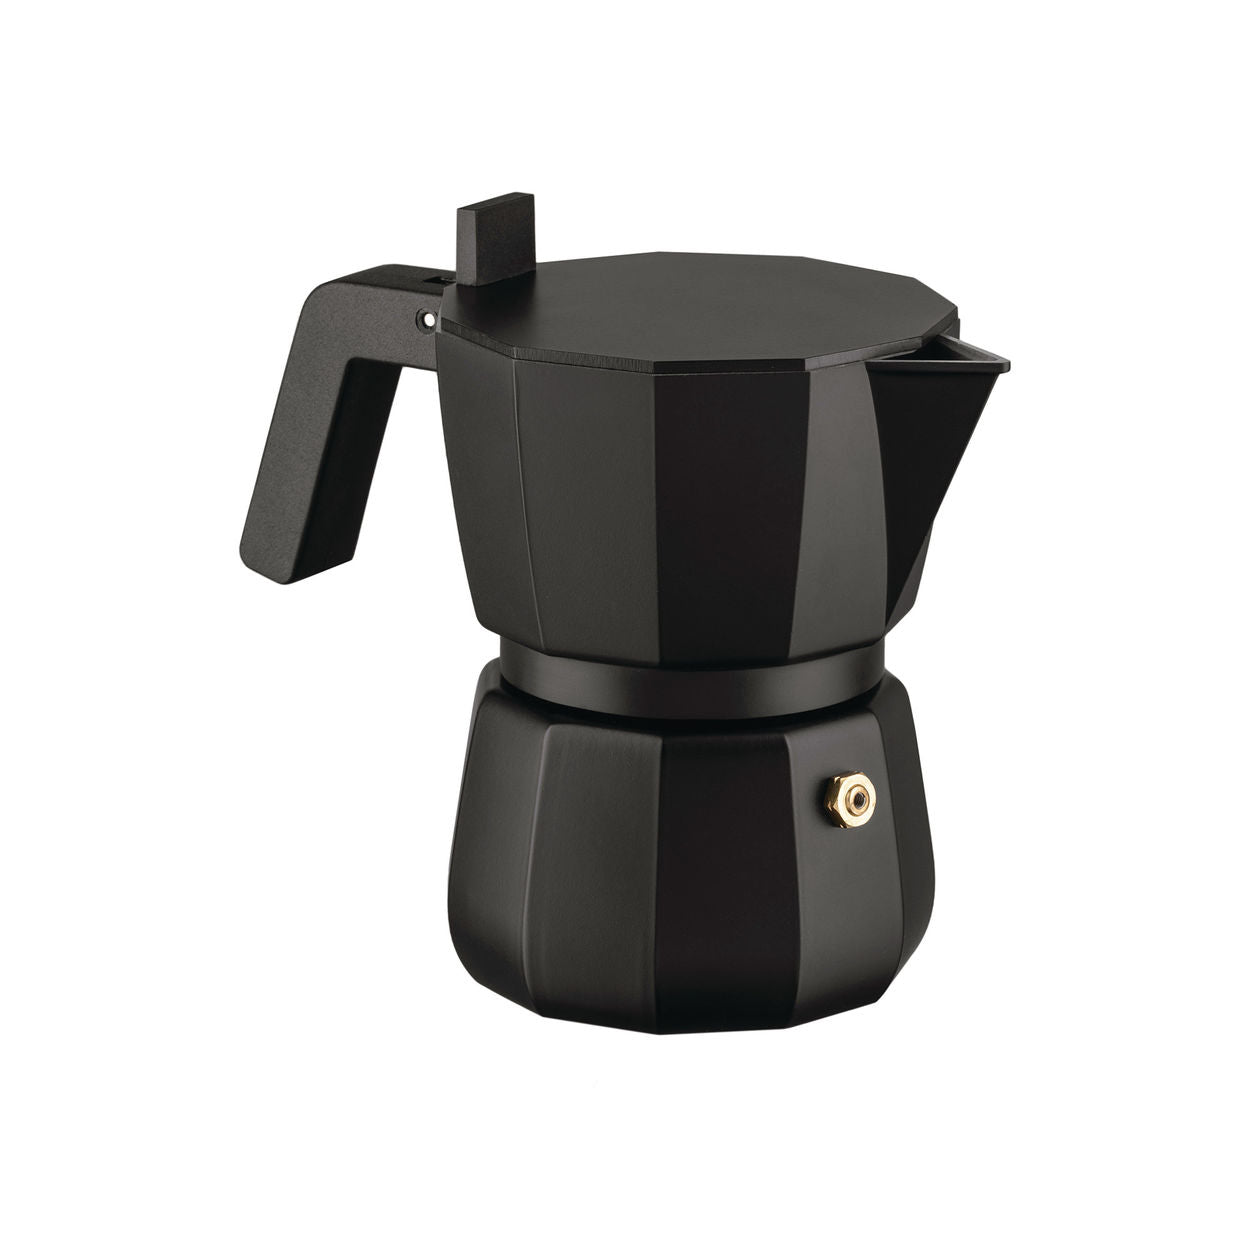 Kávovar Alessi Moka Espresso Black, 3 šálky